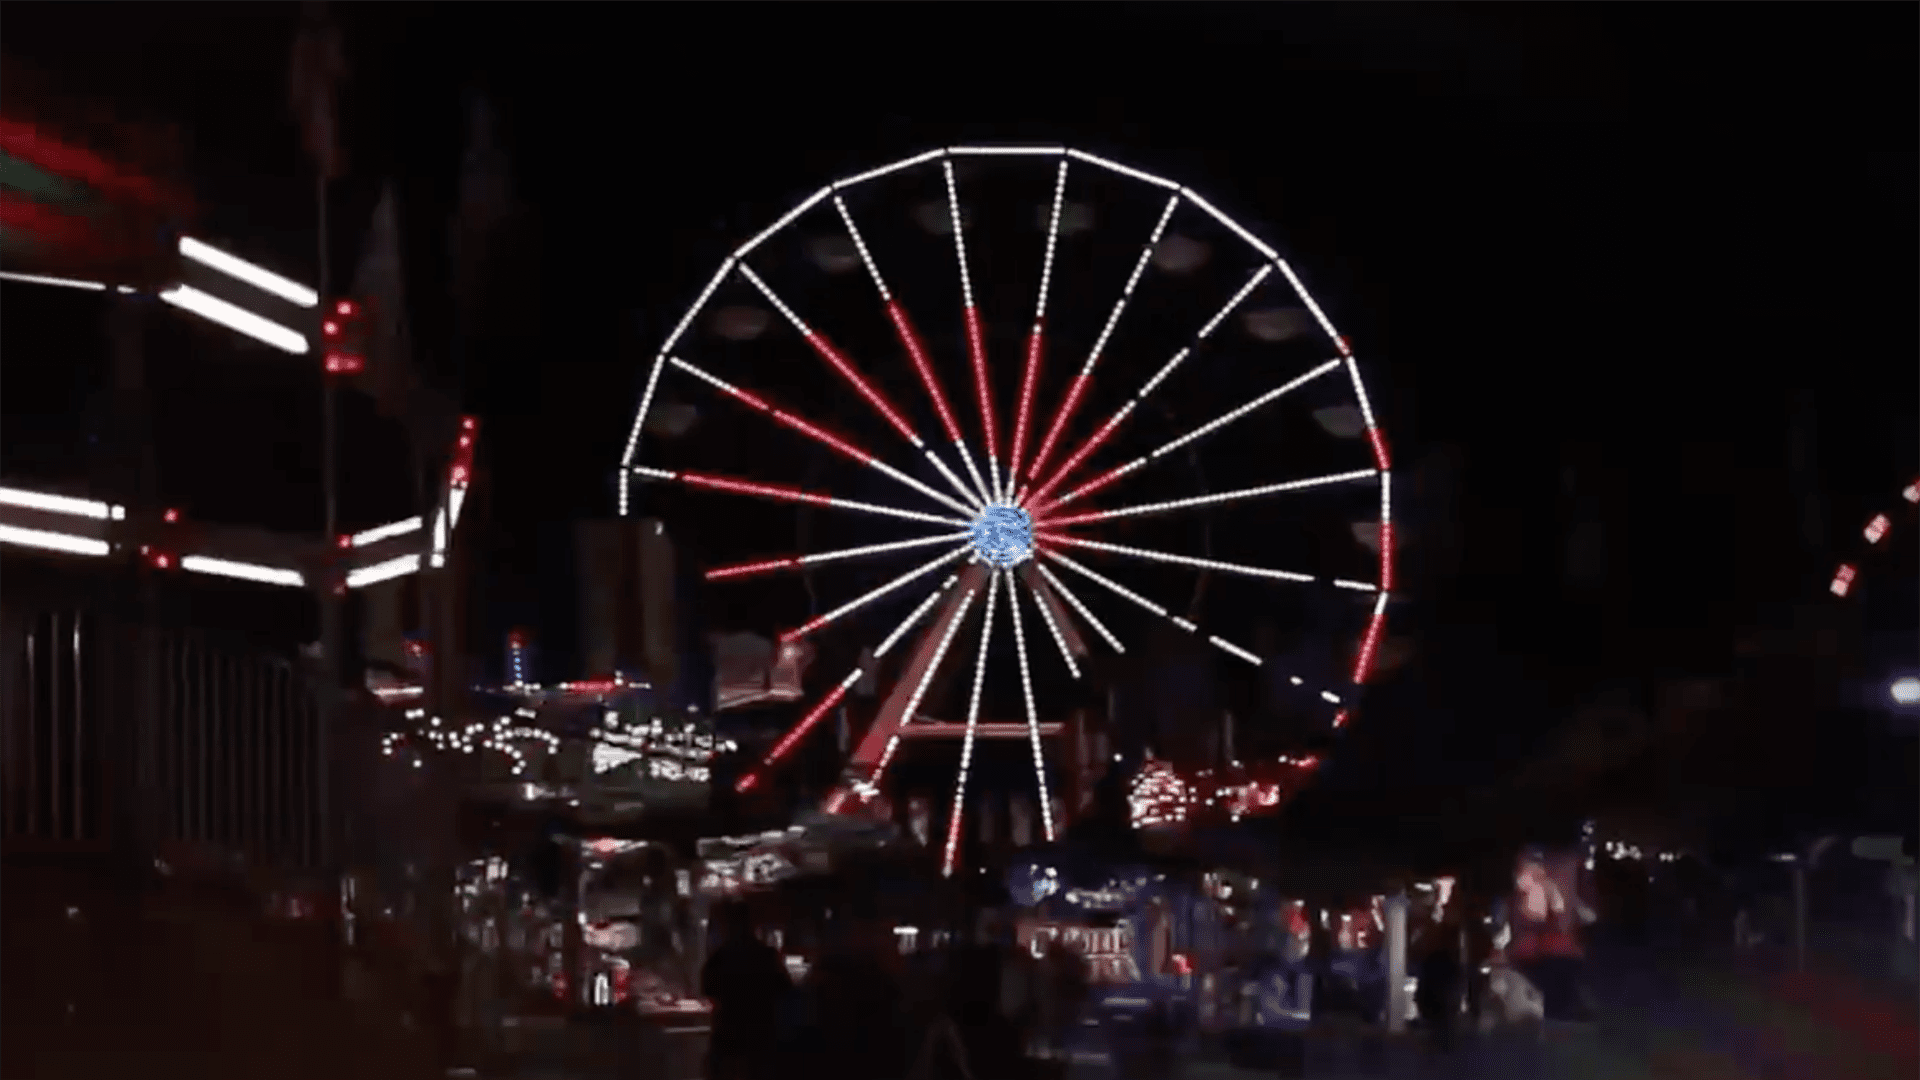 large Ferris wheel lit up at night